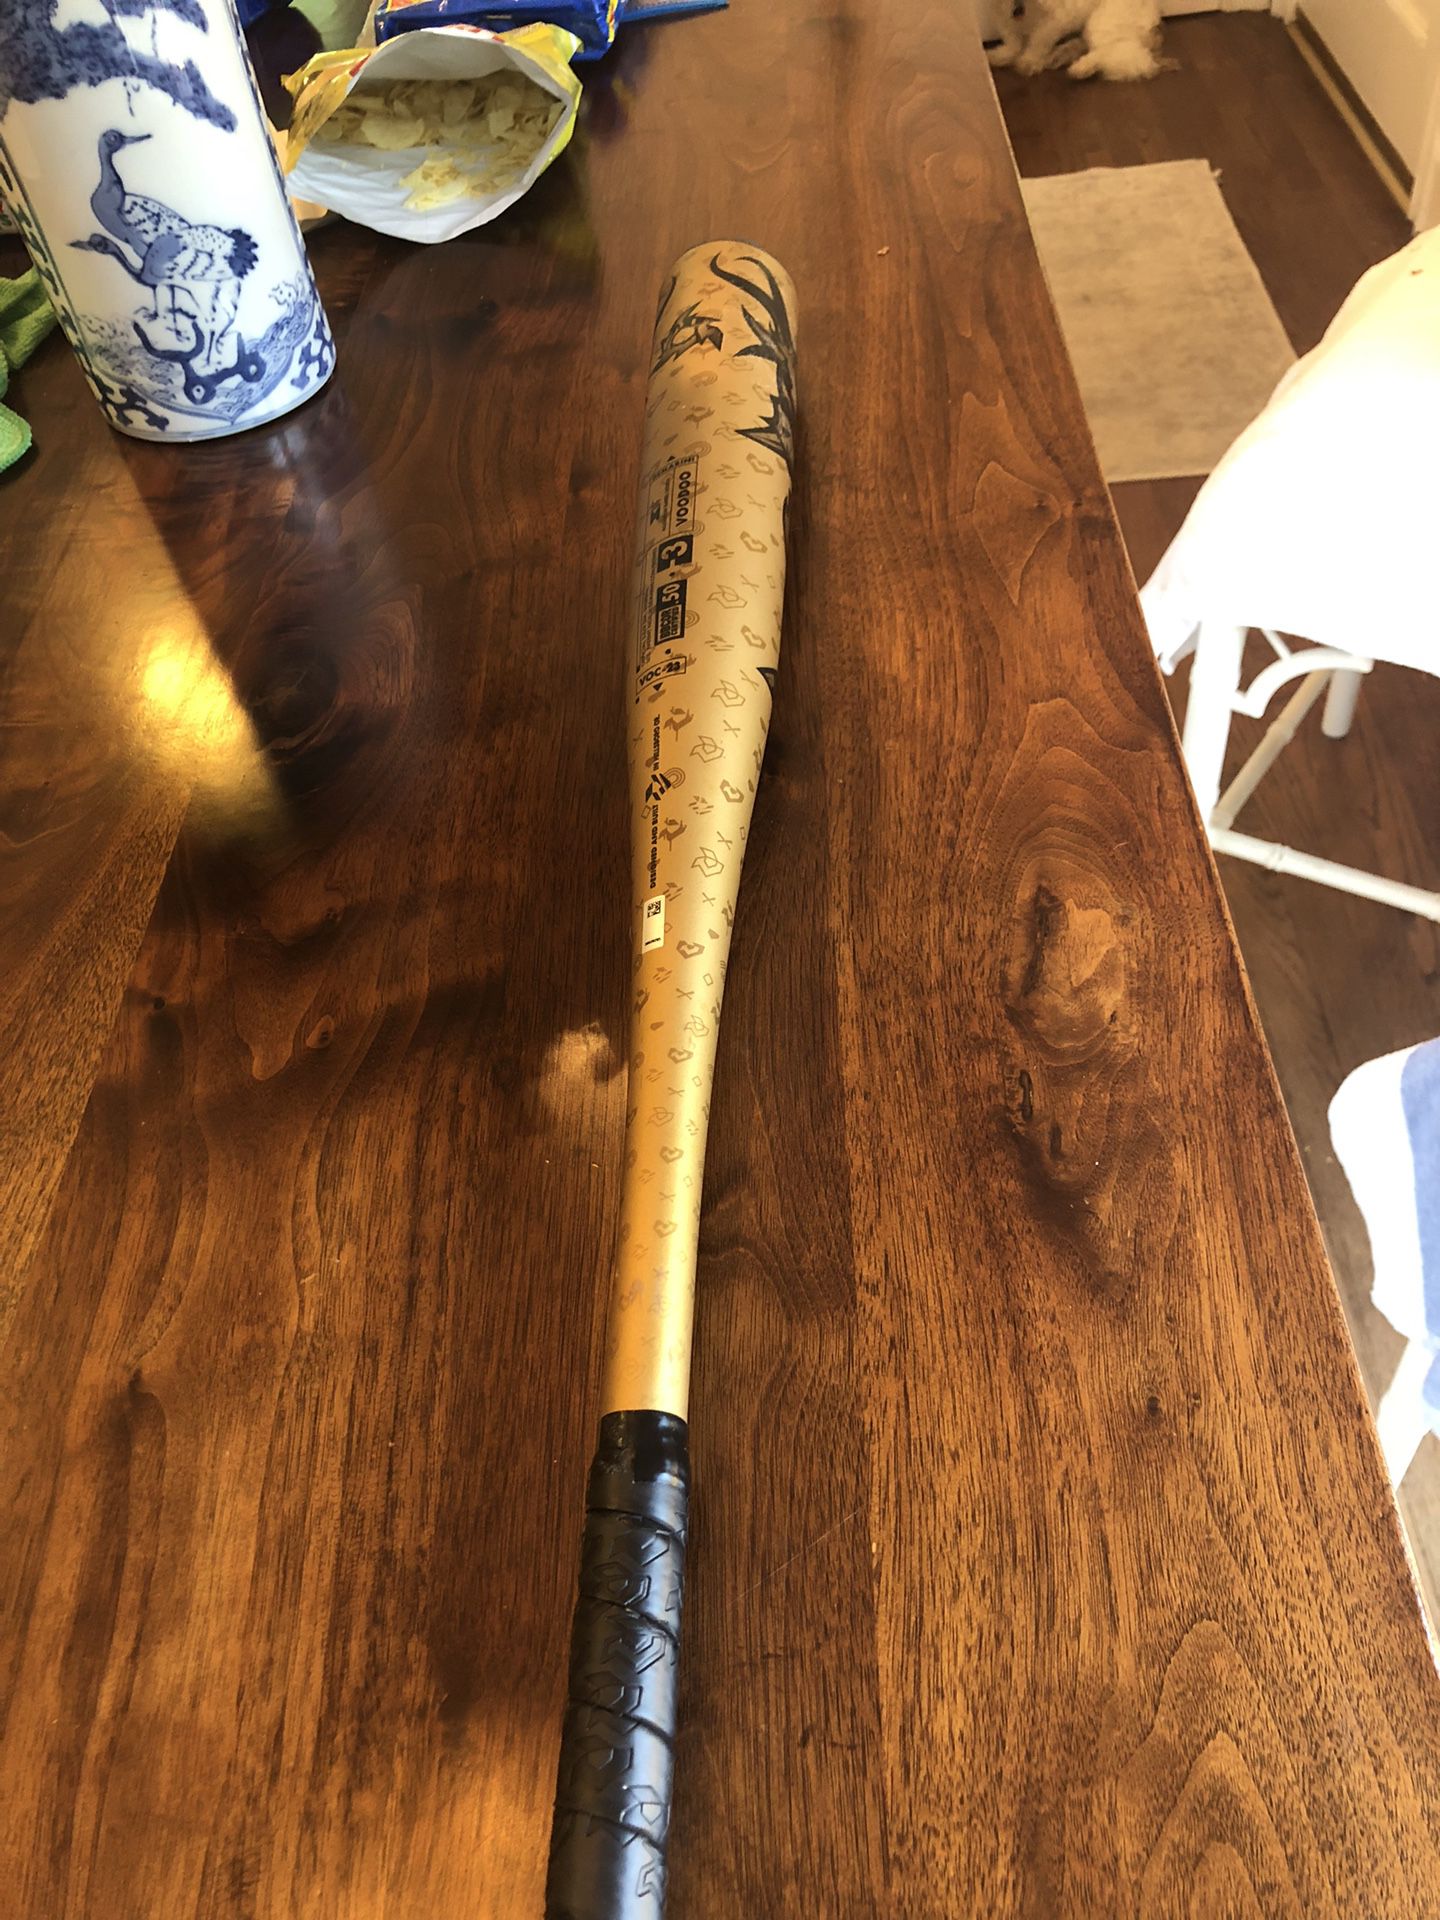  Demairni Baseball Bat 